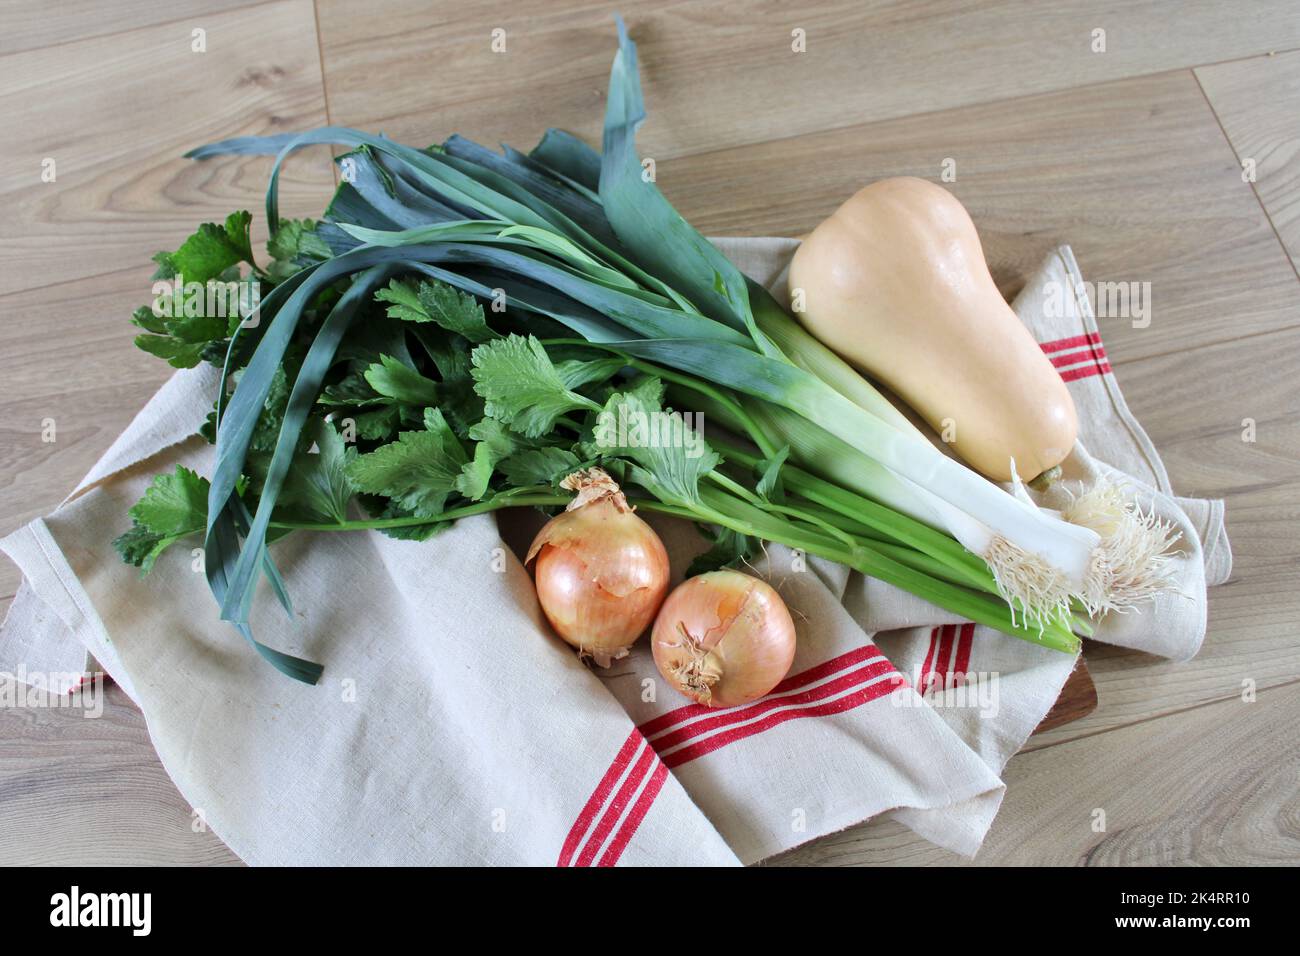 Légumes crus pour soupe, oignons, poireaux, celeri, potimarron, courge, préparation à la cuisine Stock Photo